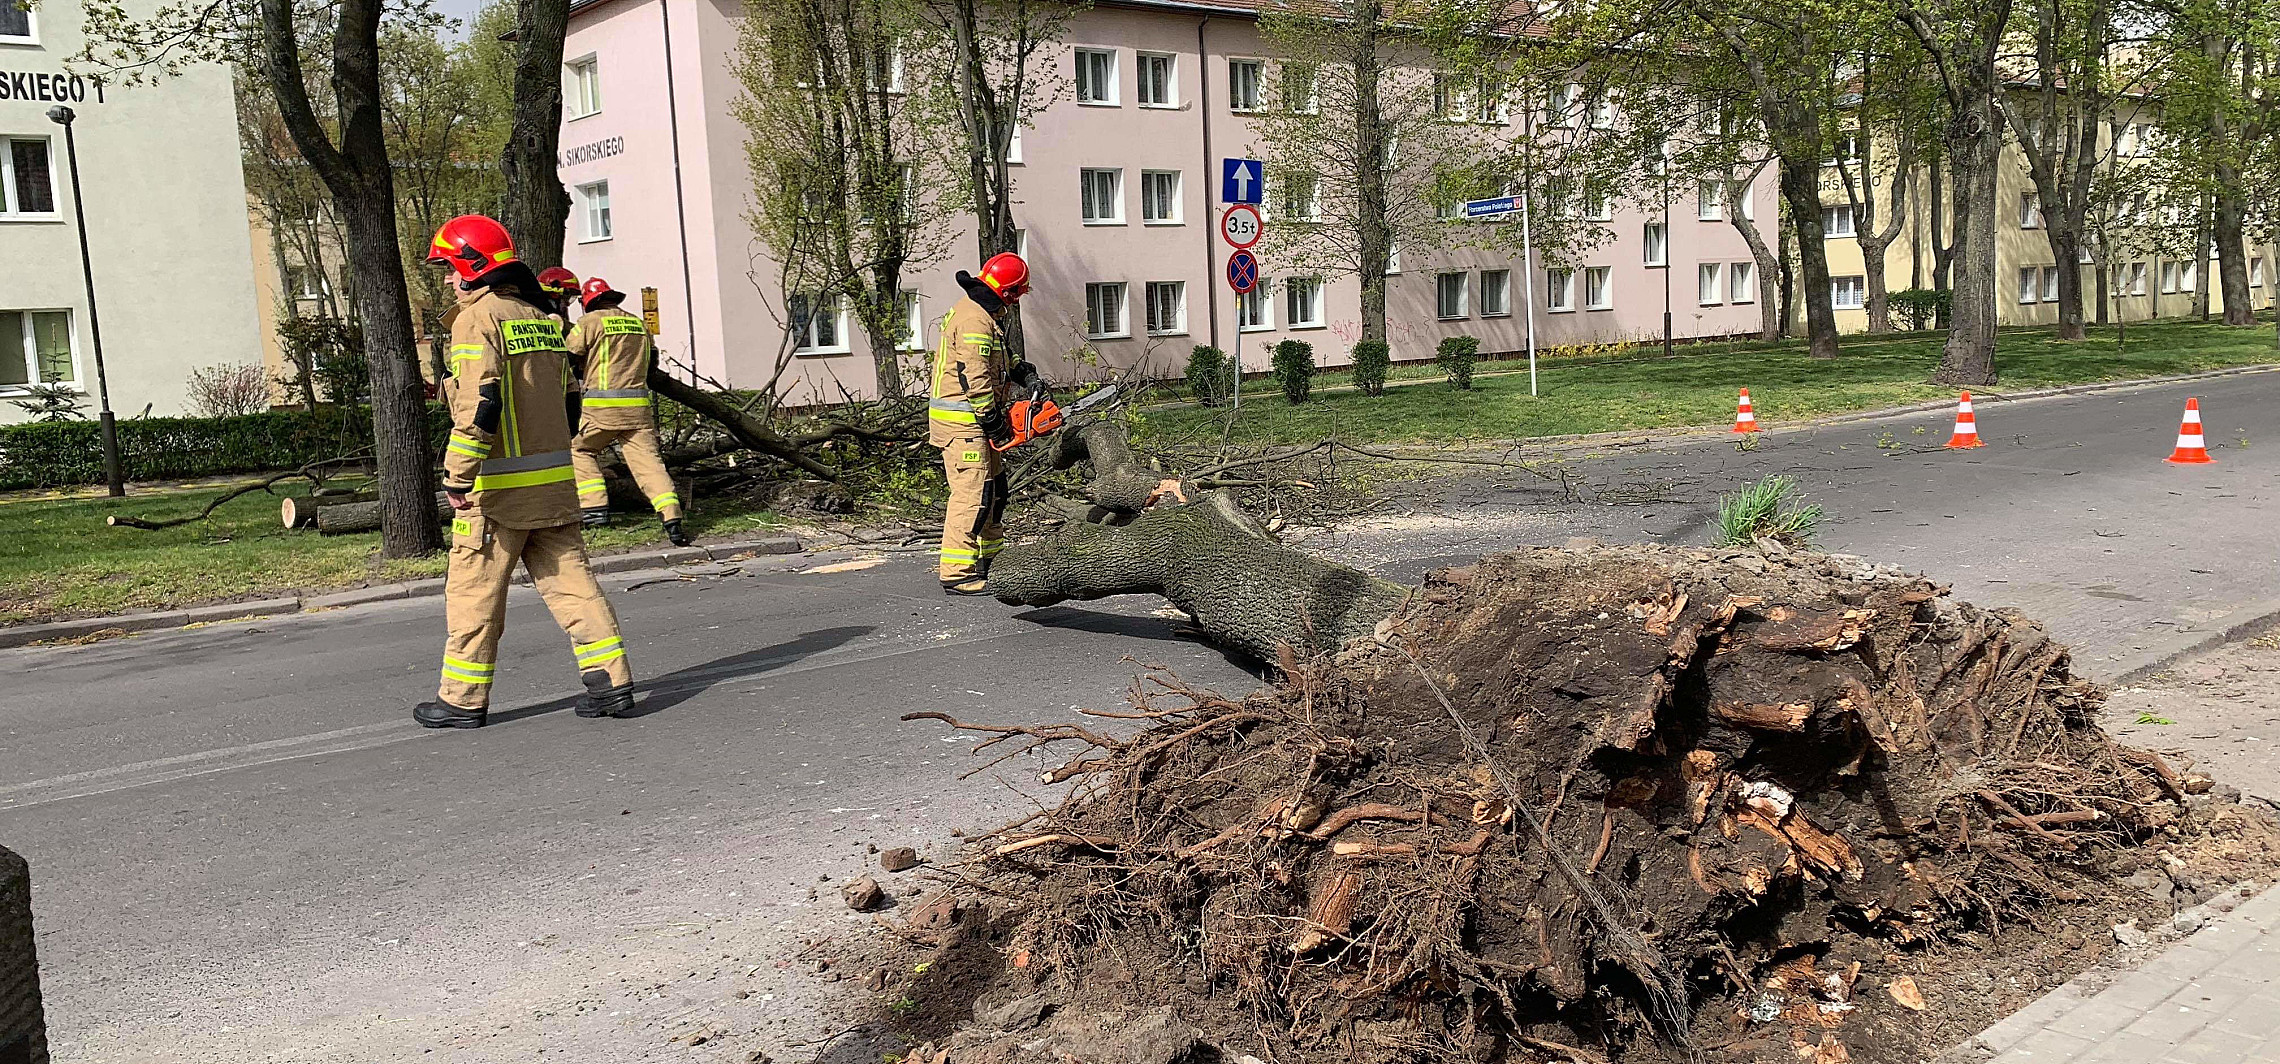 Inowrocław - Wichura powaliła drzewo na osiedlu Nowym